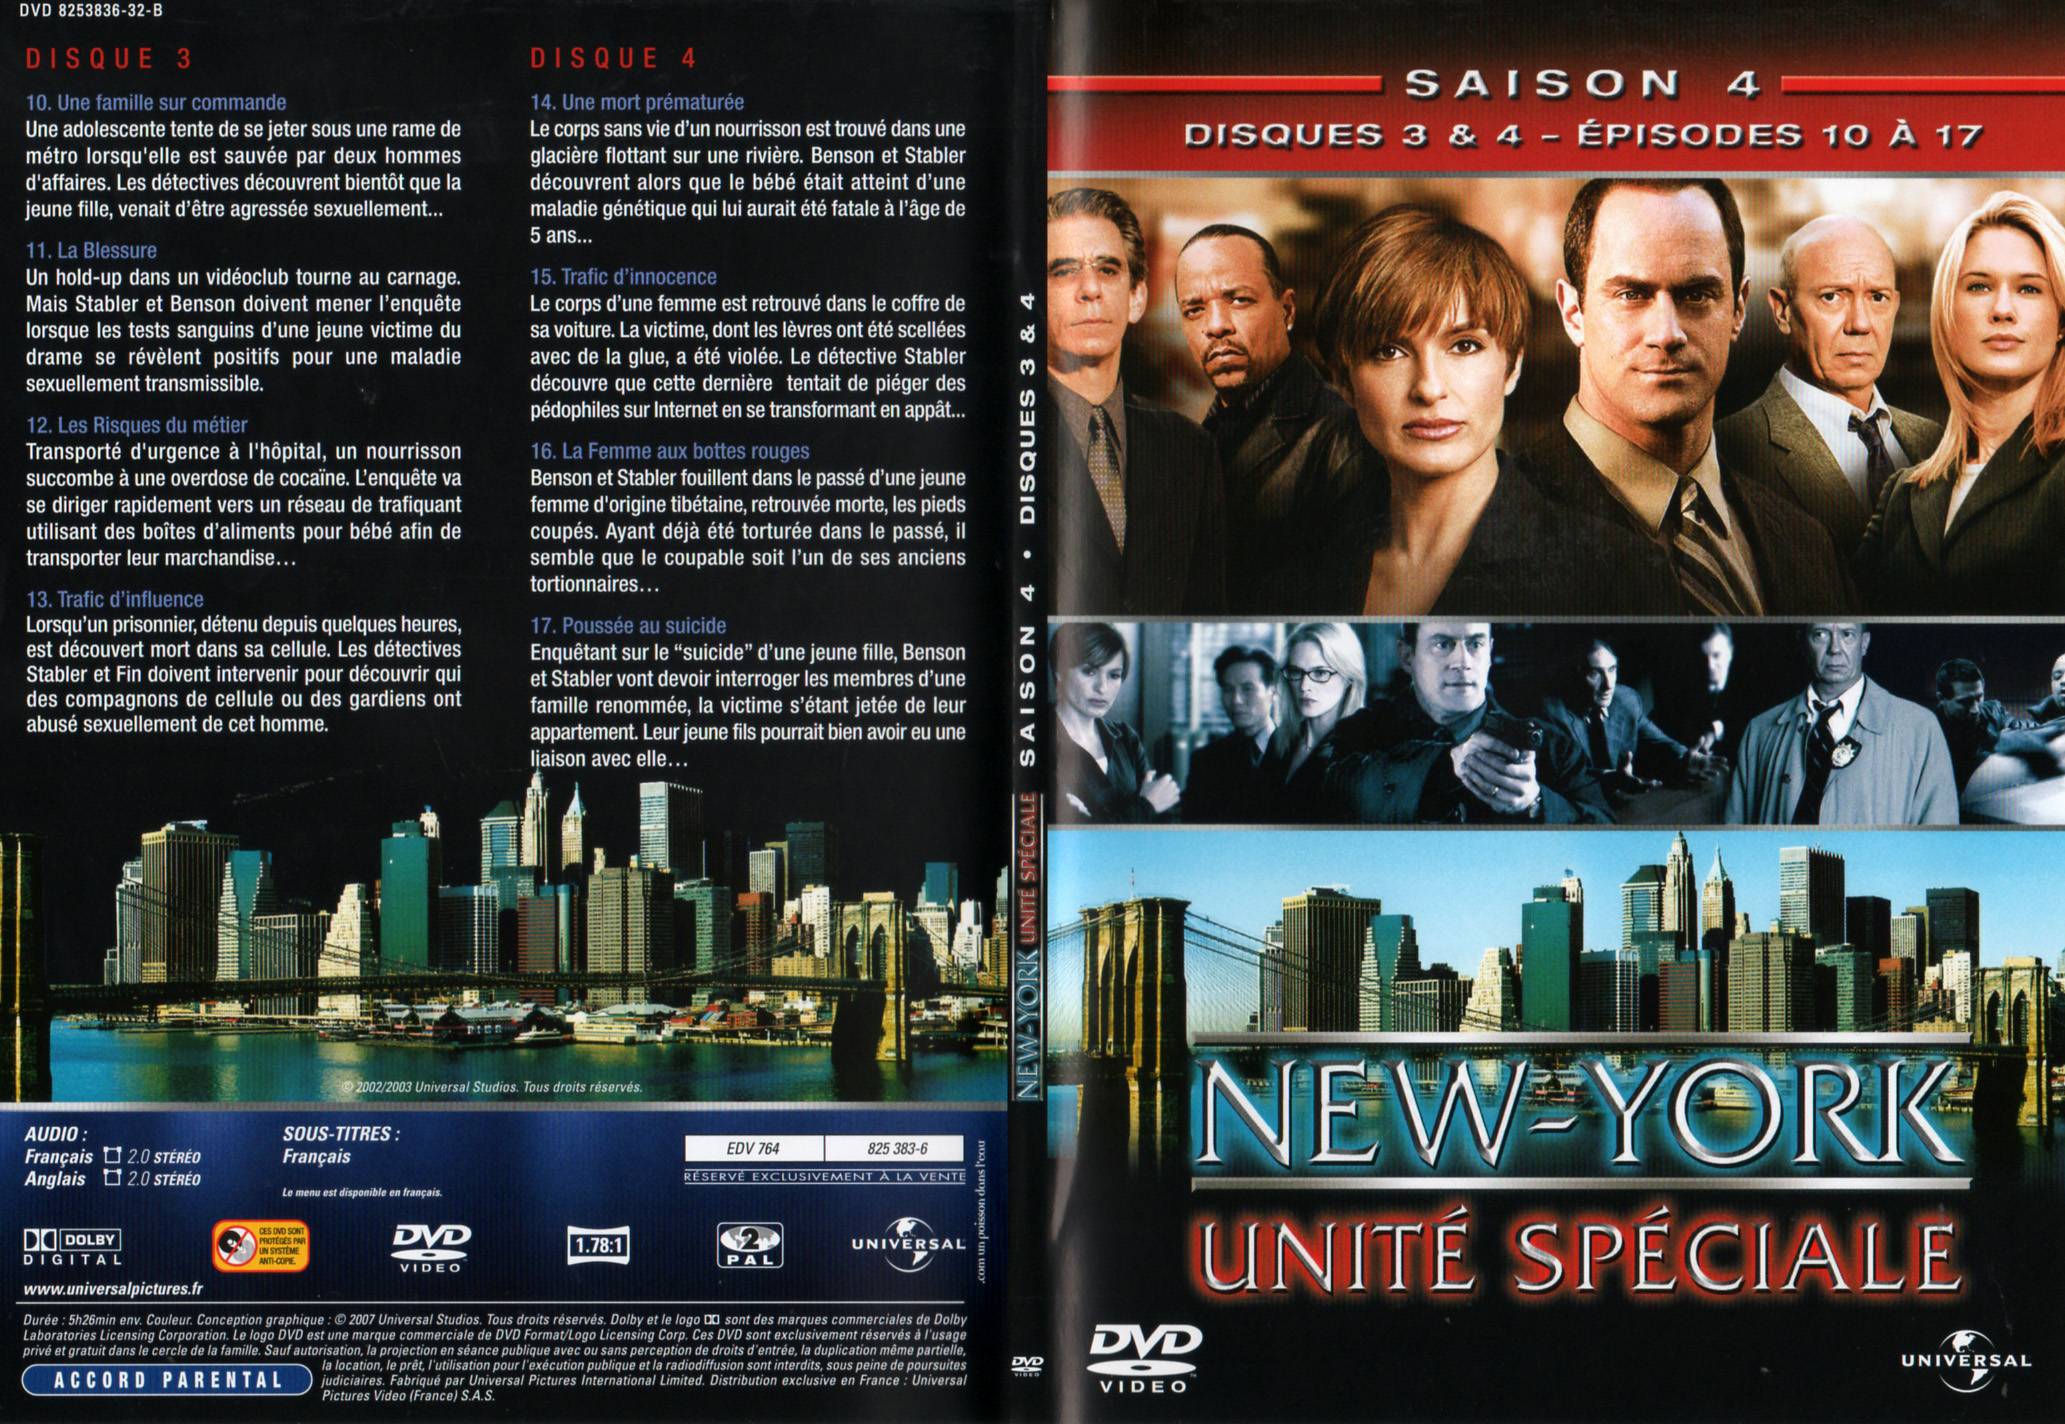 Jaquette DVD New York unit spciale saison 4 DVD 2